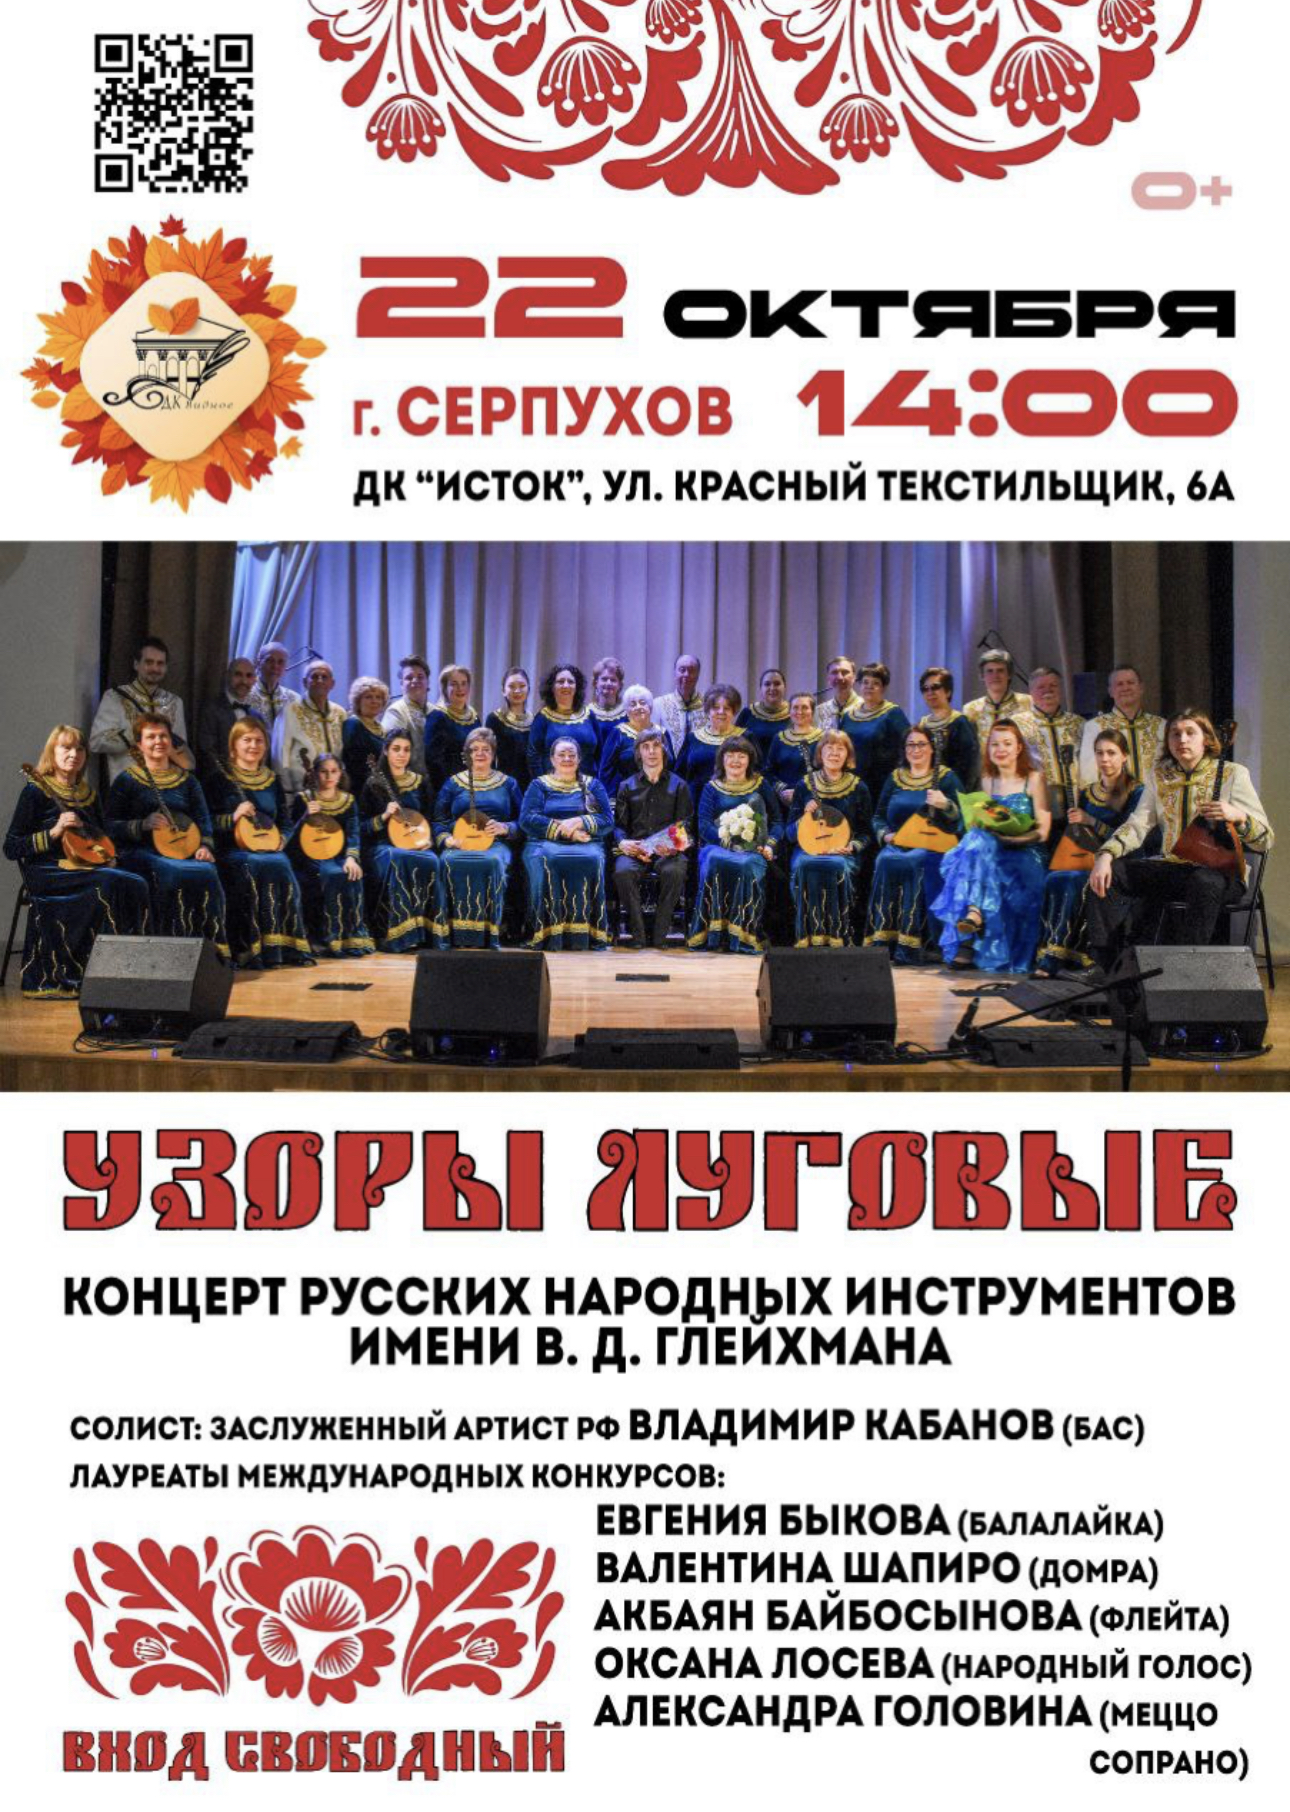 Концерт русских народных инструментов